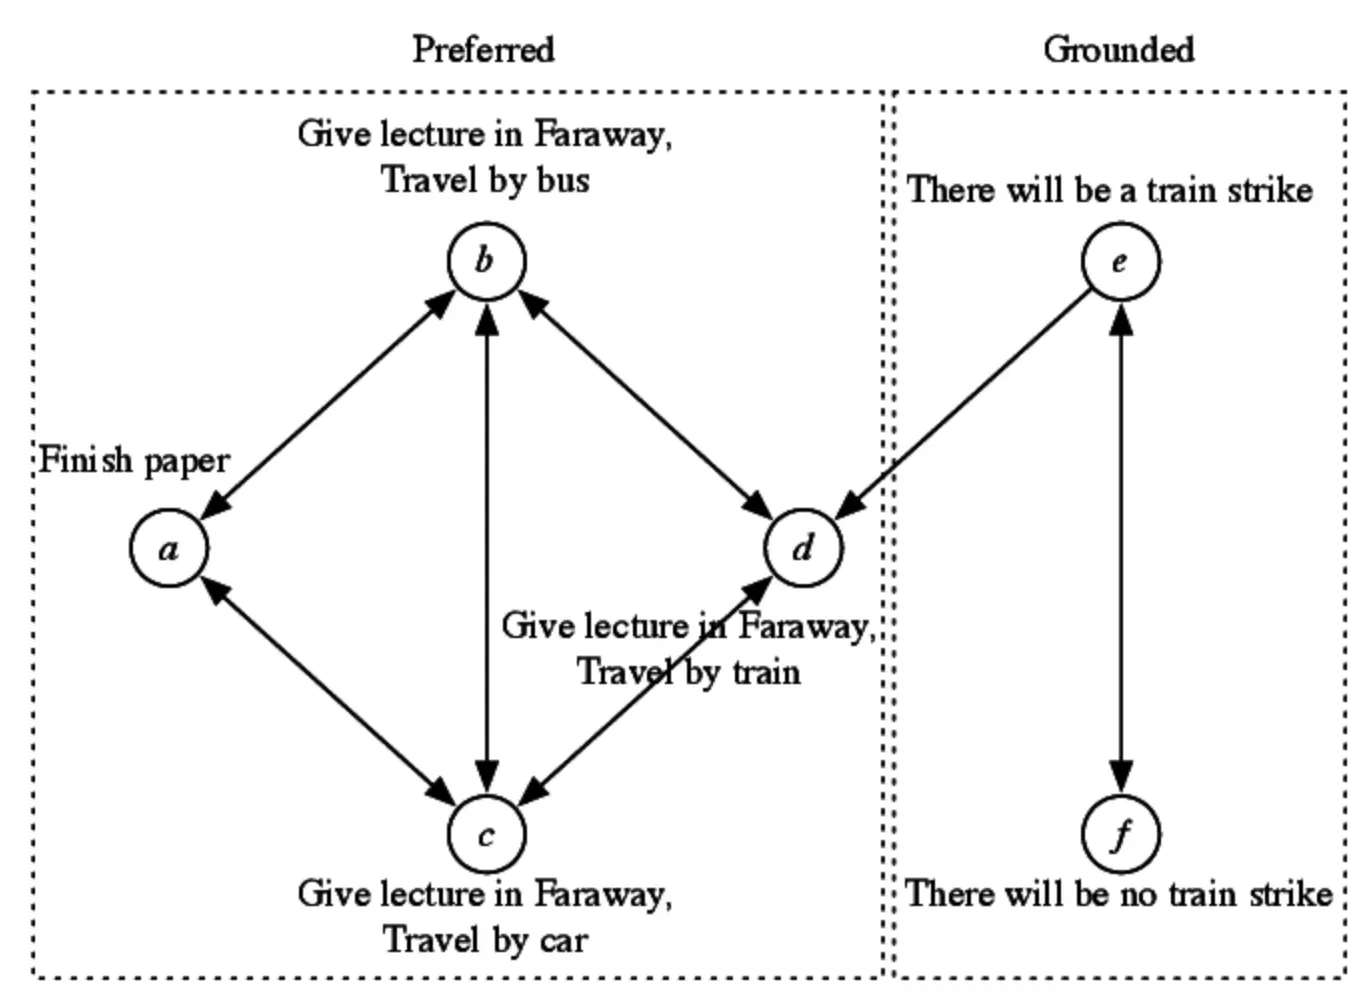 Advanced Concepts in Argumentation Framework